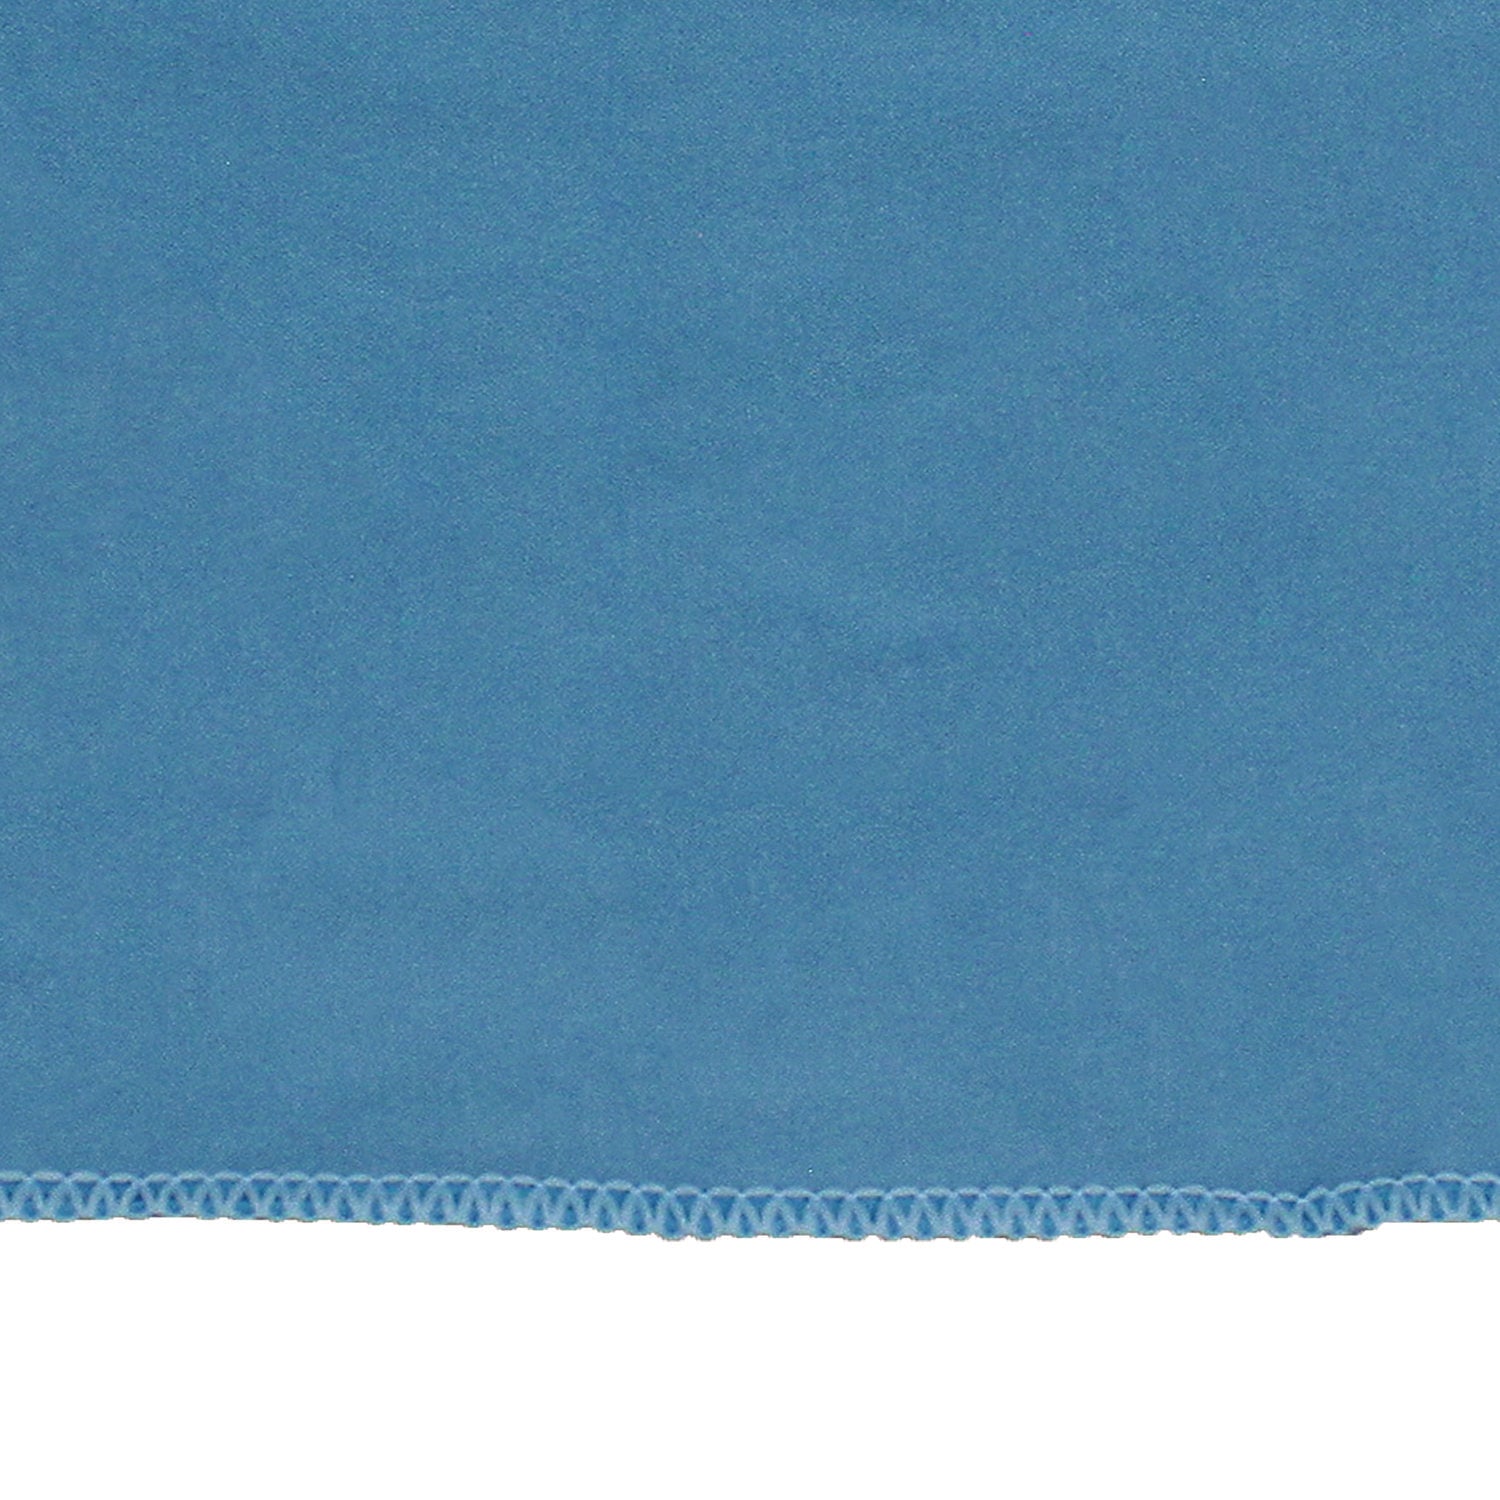 lightweight-microfiber-cloths-16-x-16-blue-12-pack-18-packs-carton_implfk100 - 4